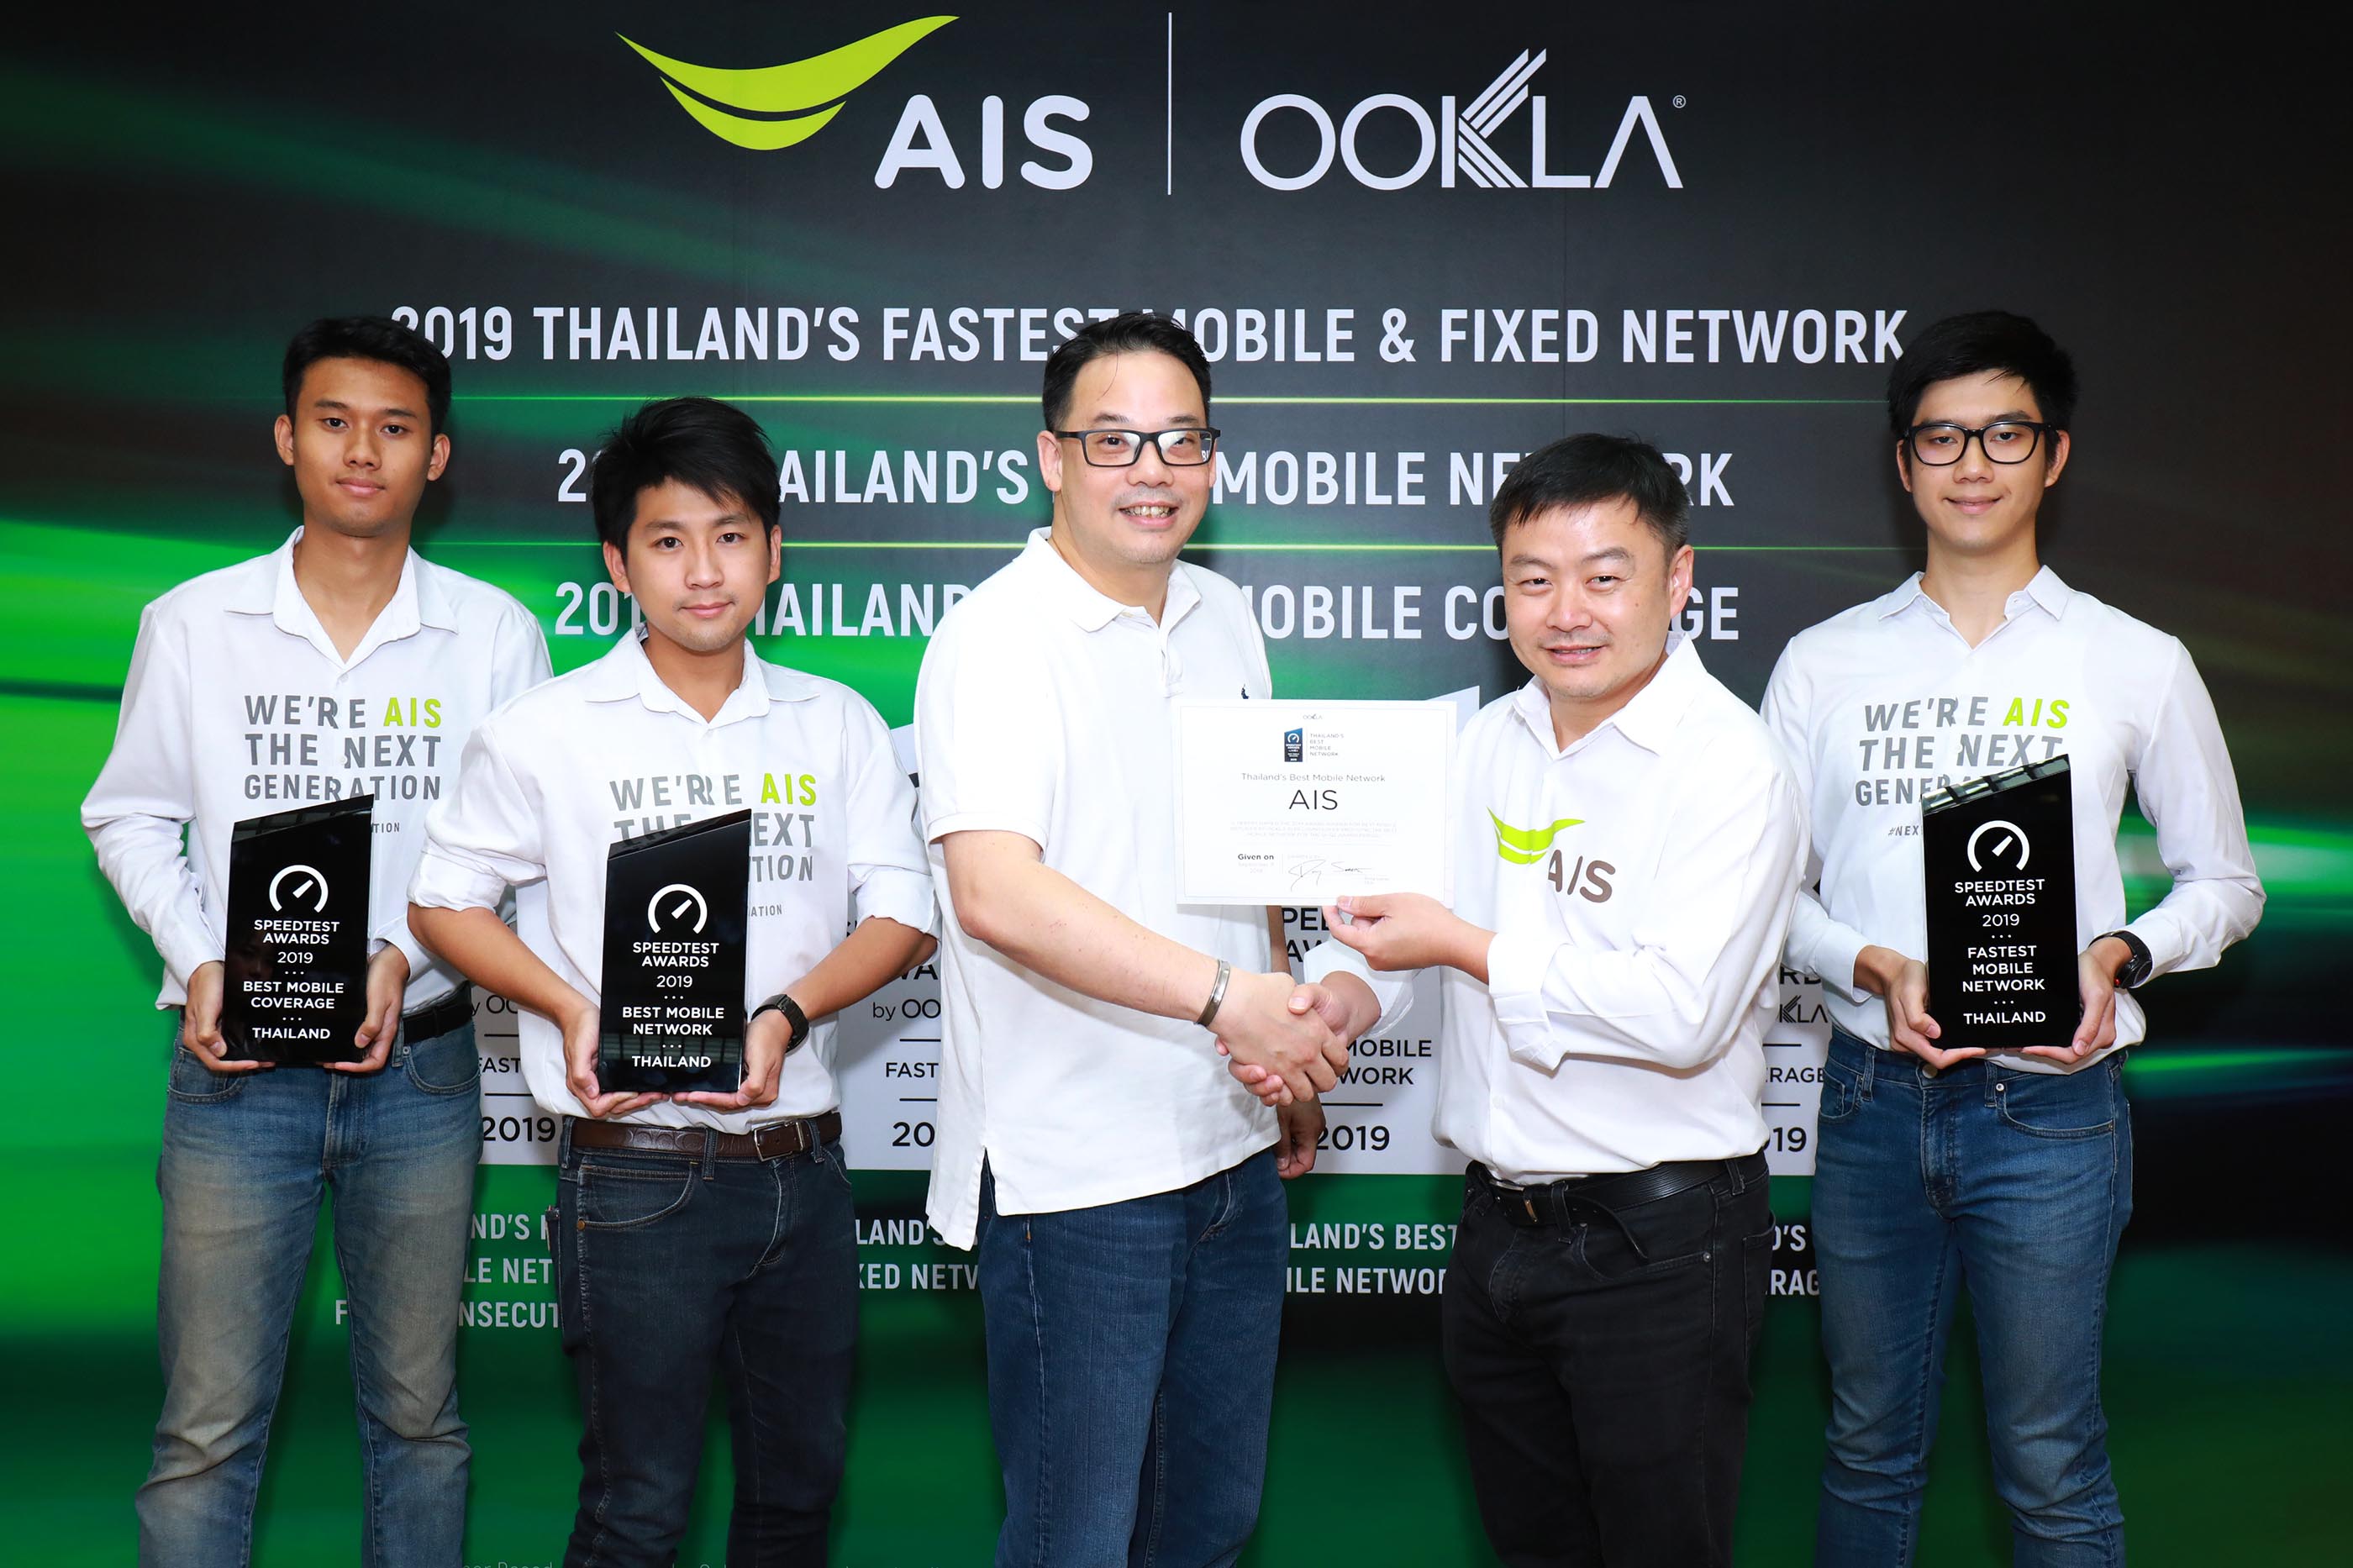 Ookla® แอปฯ สปีดเทสระดับโลกการันตี AIS เป็นเครือข่ายอันดับ 1 ที่เร็วที่สุดในไทย ทั้งเน็ตมือถือและเน็ตบ้าน